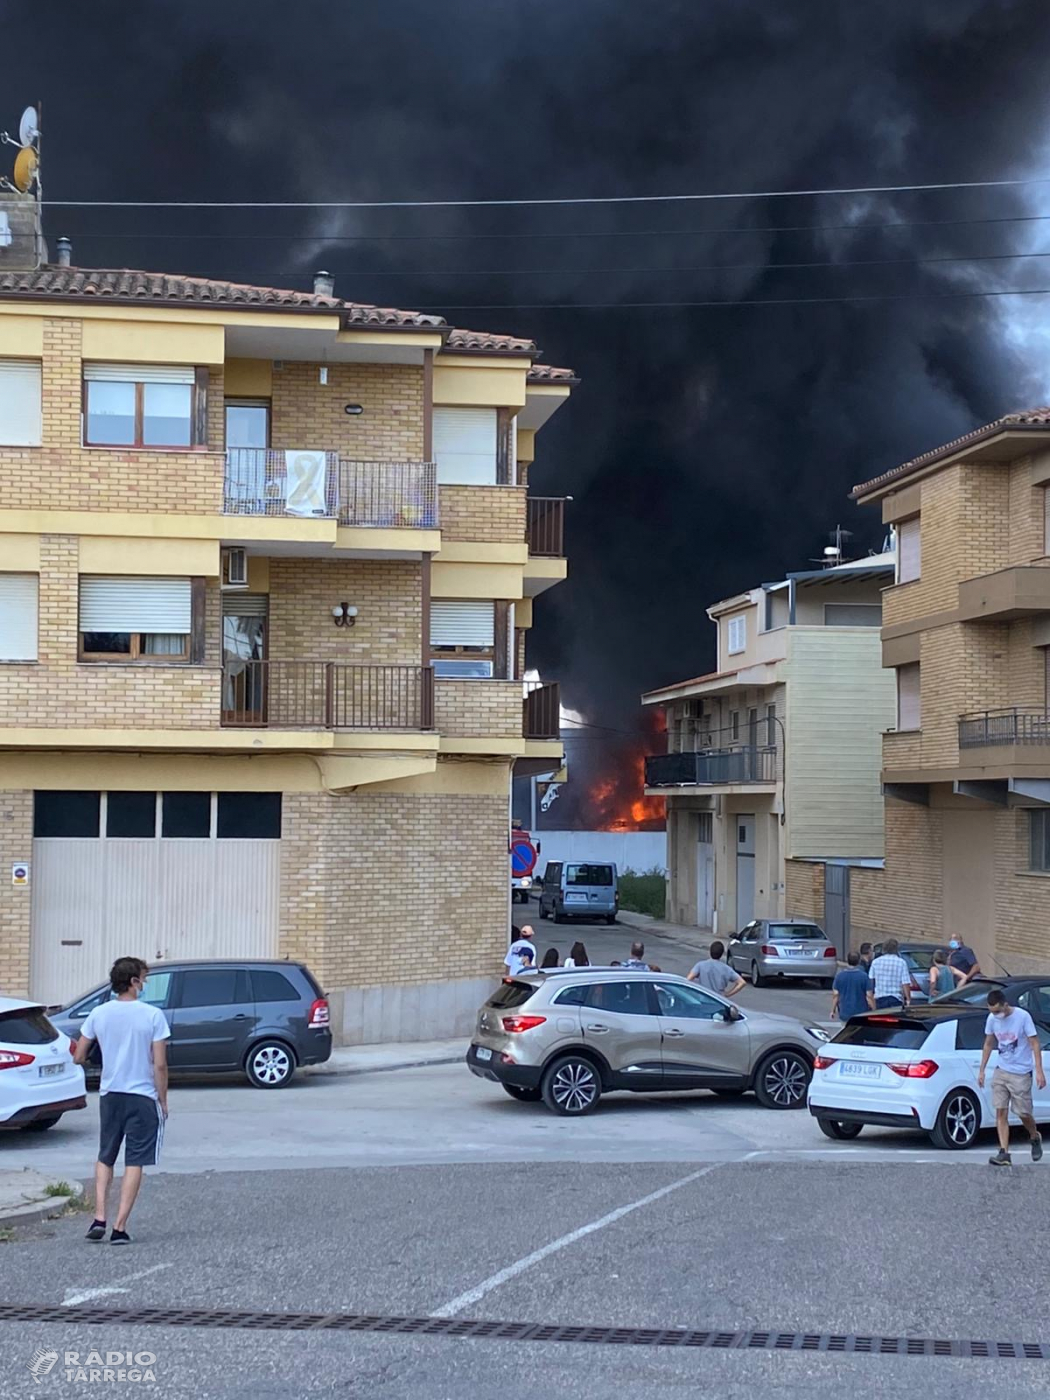 ACTUALITZACIÓ - Incendi a un solar pròxim a una nau d'un taller mecànic a Tàrrega